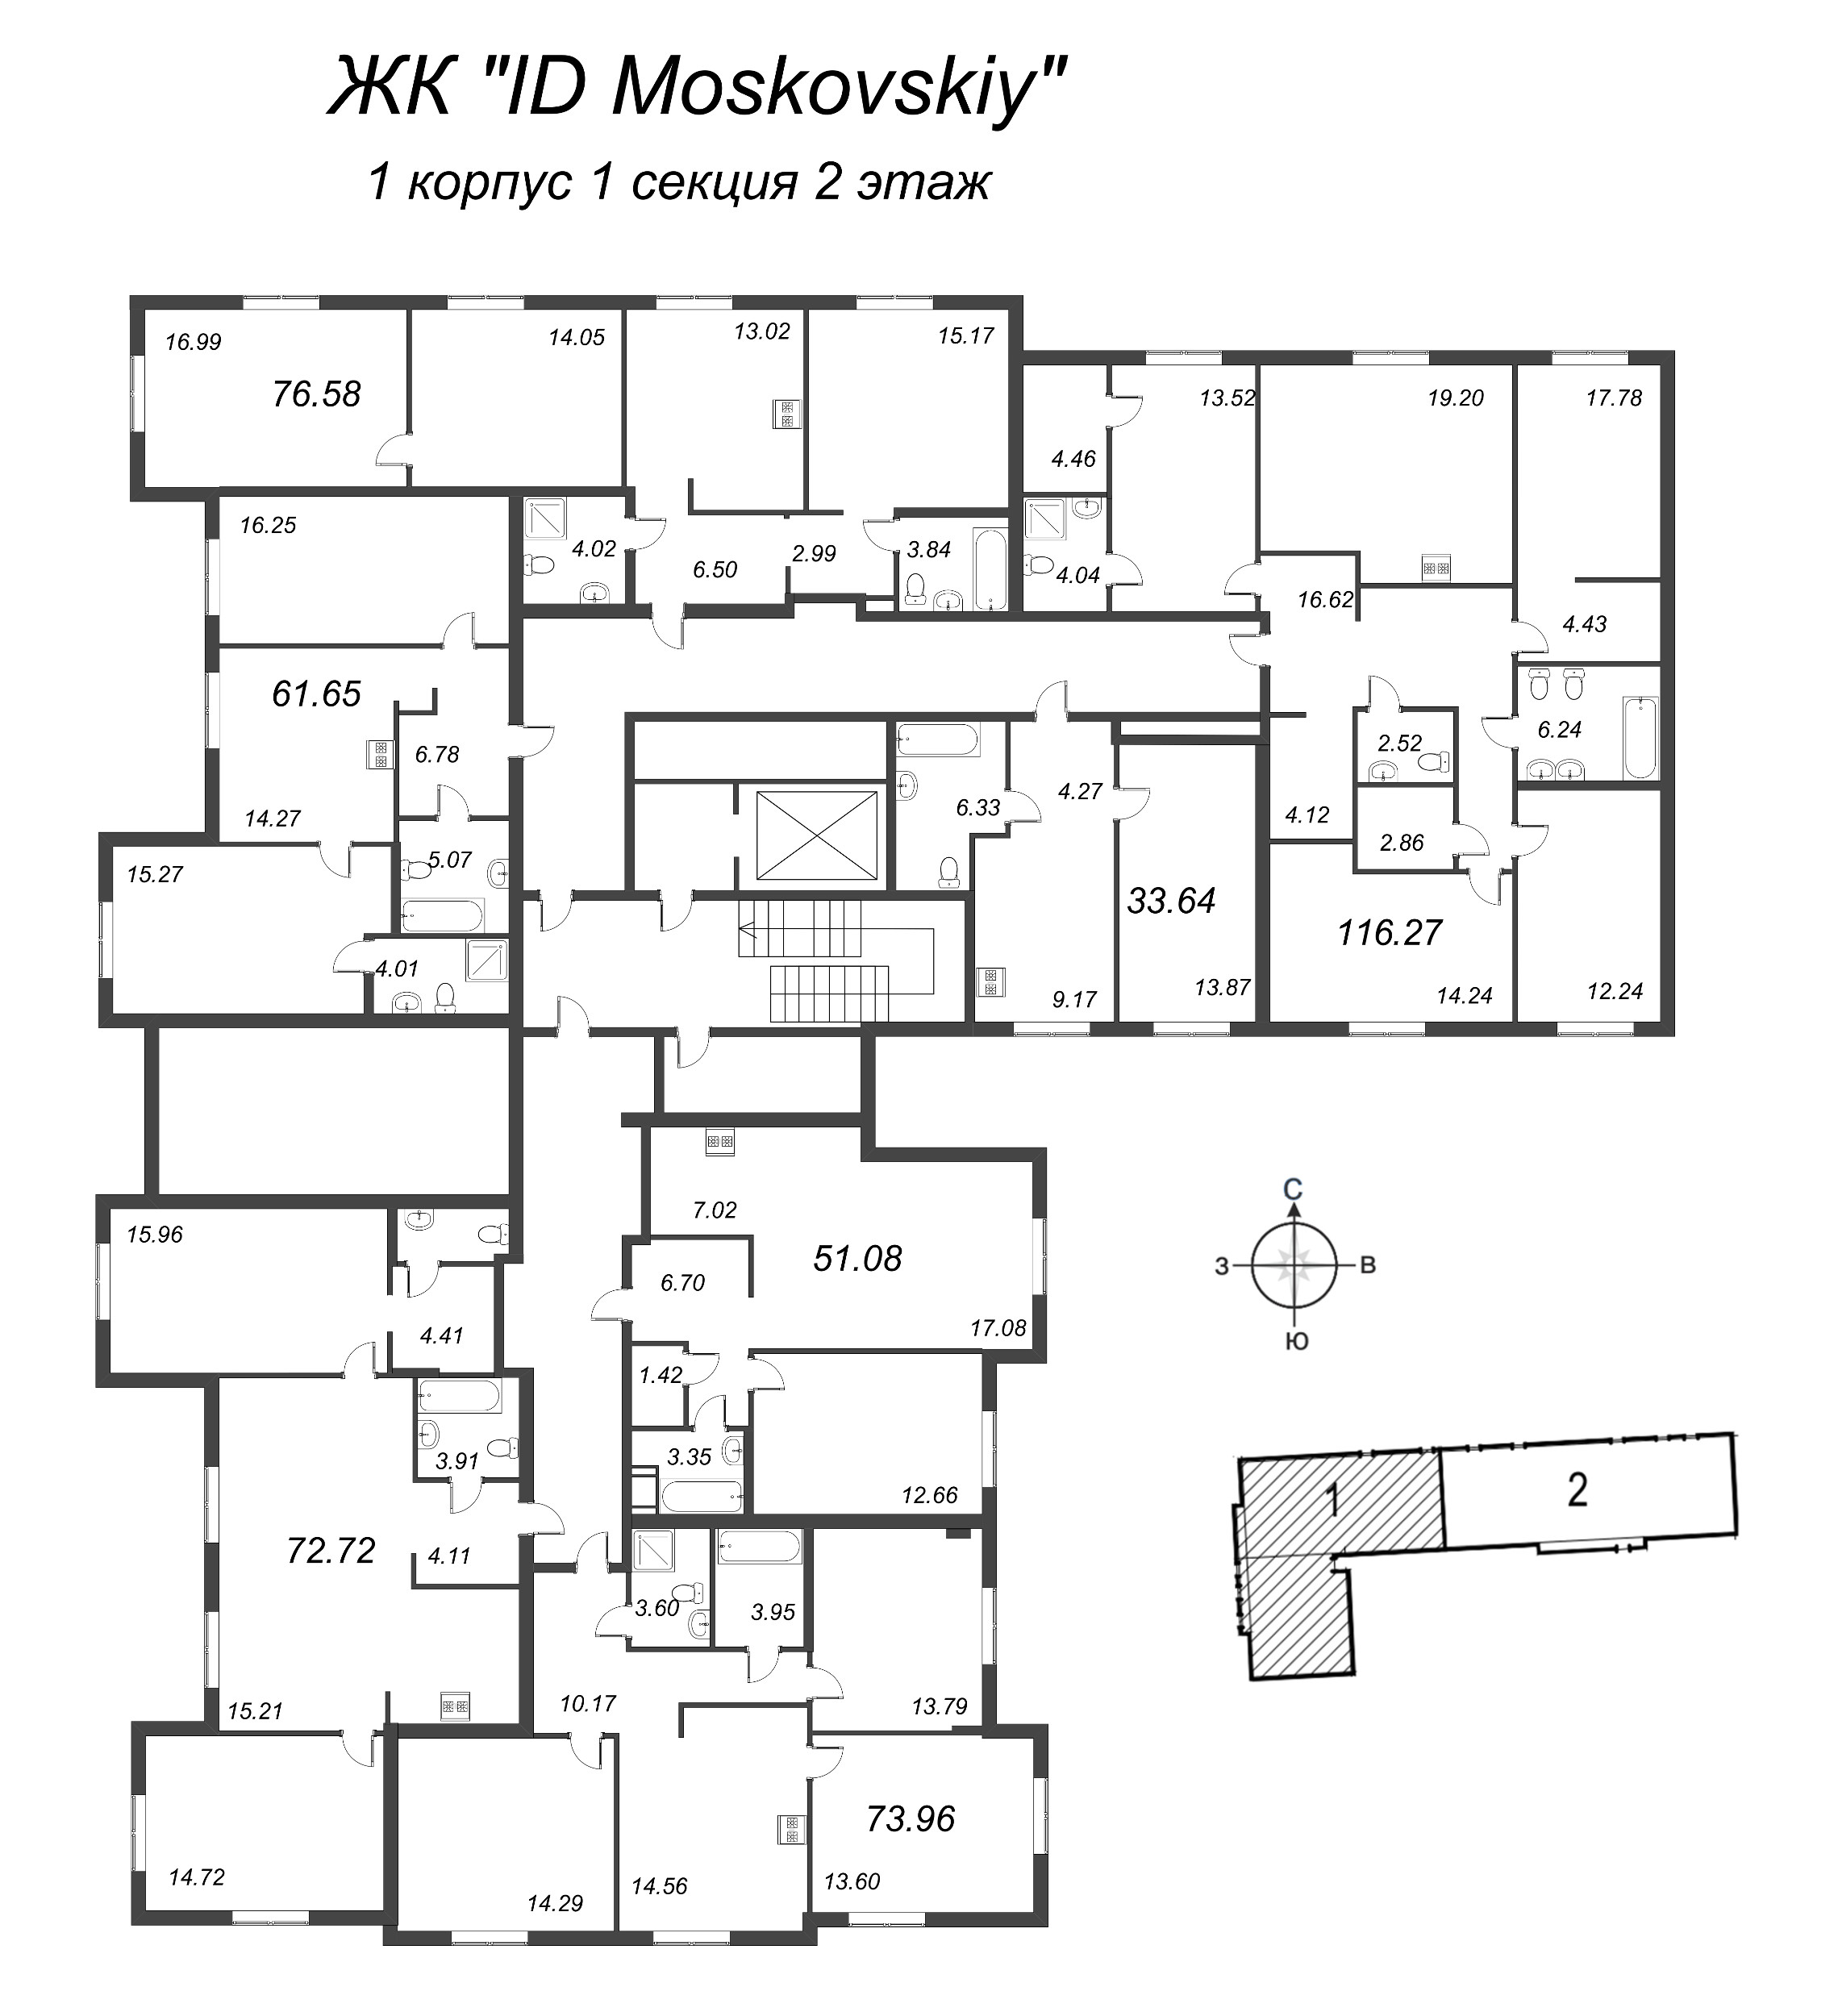 2-комнатная квартира, 61.65 м² в ЖК "ID Moskovskiy" - планировка этажа